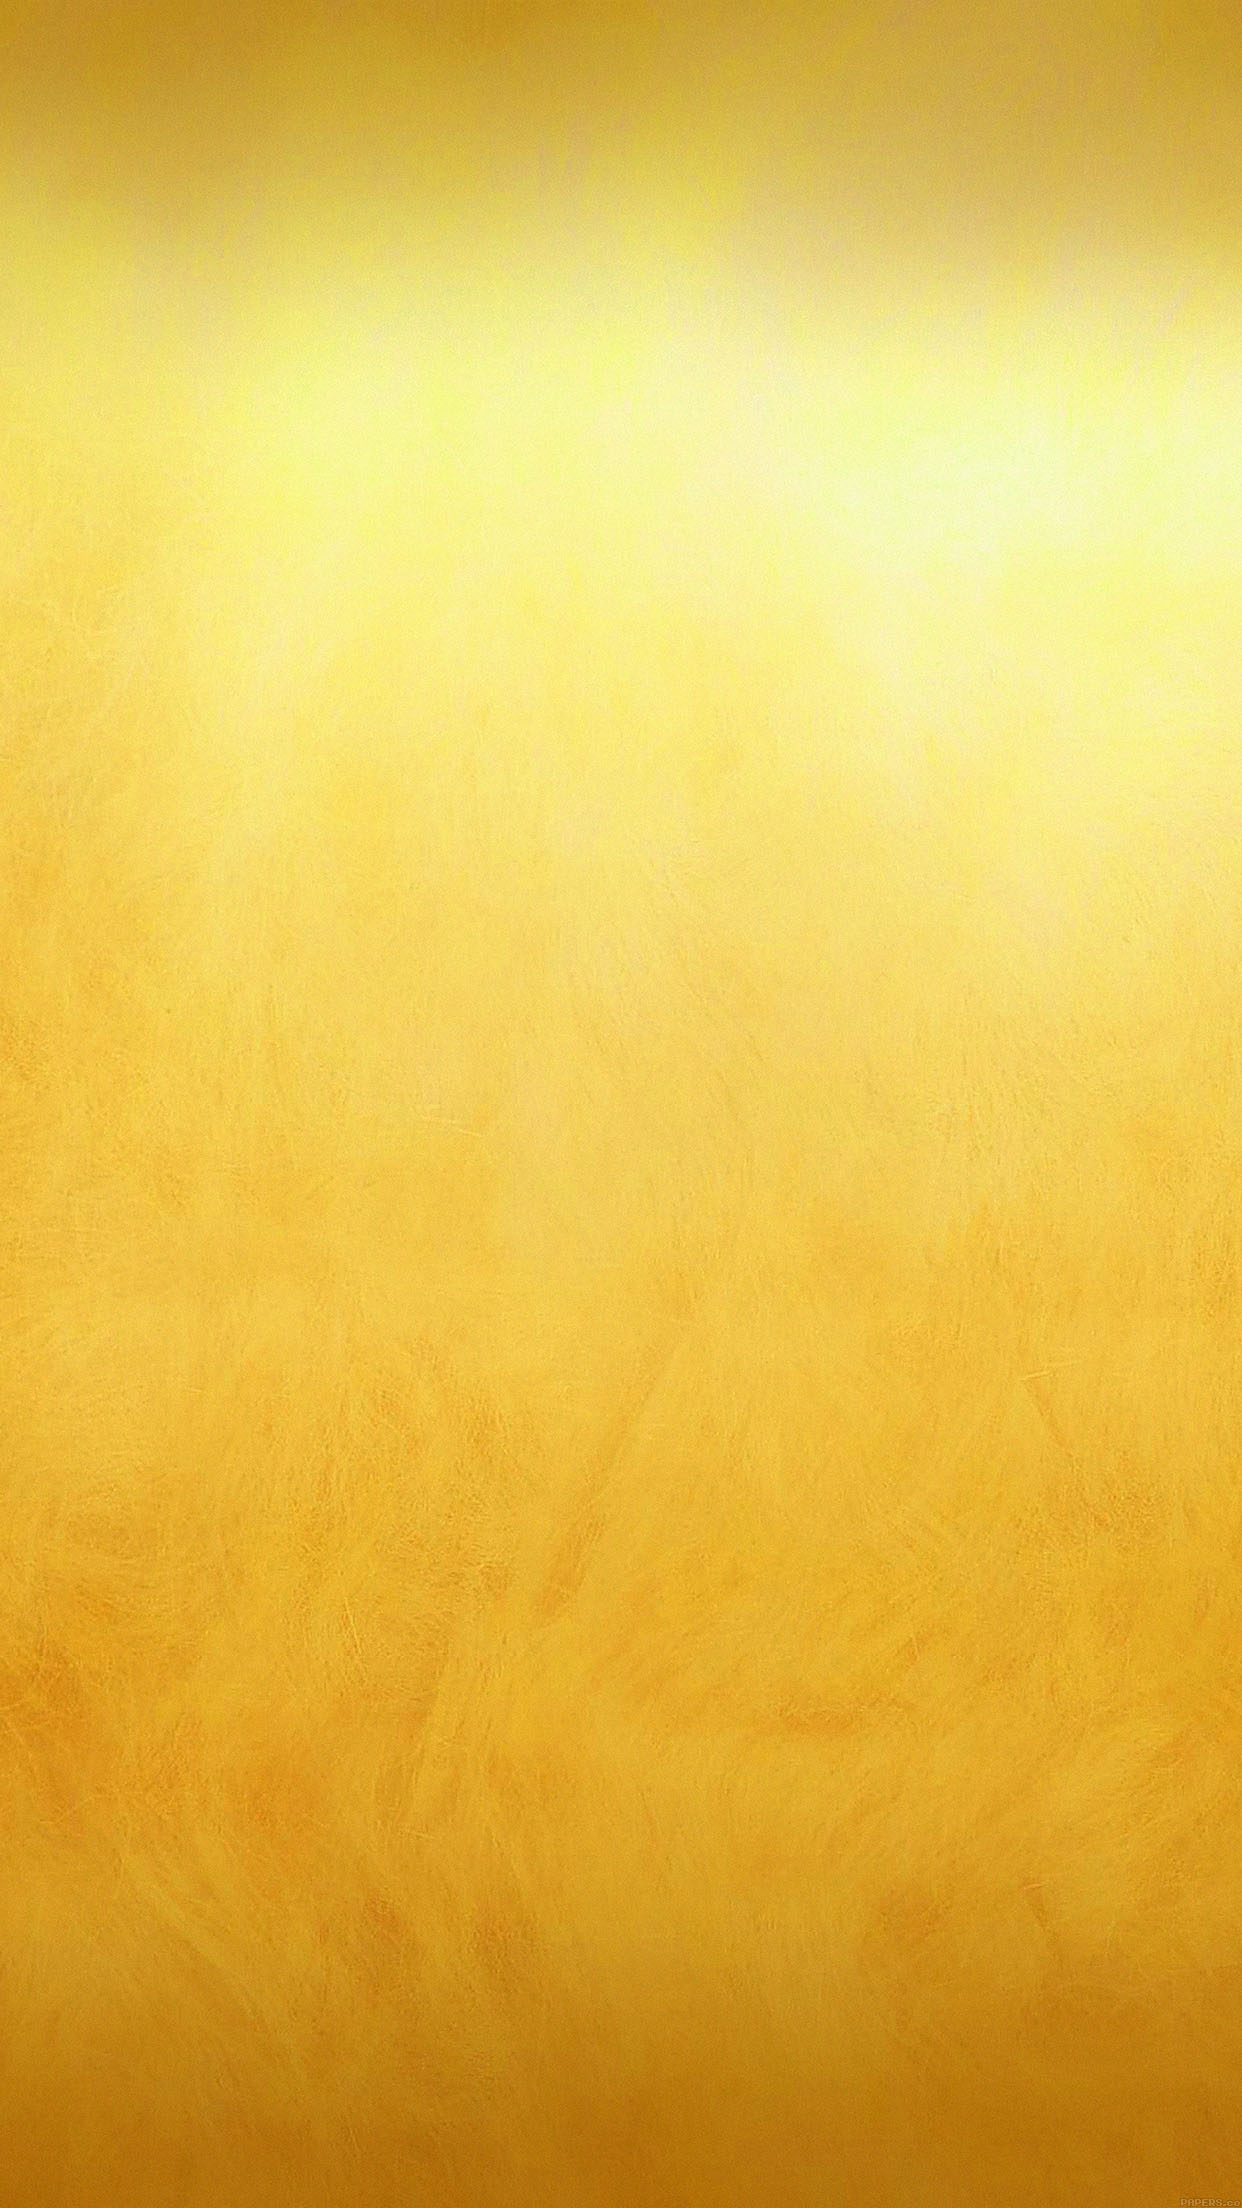 gold_iPhone_wallpaper_3 - MacTrast